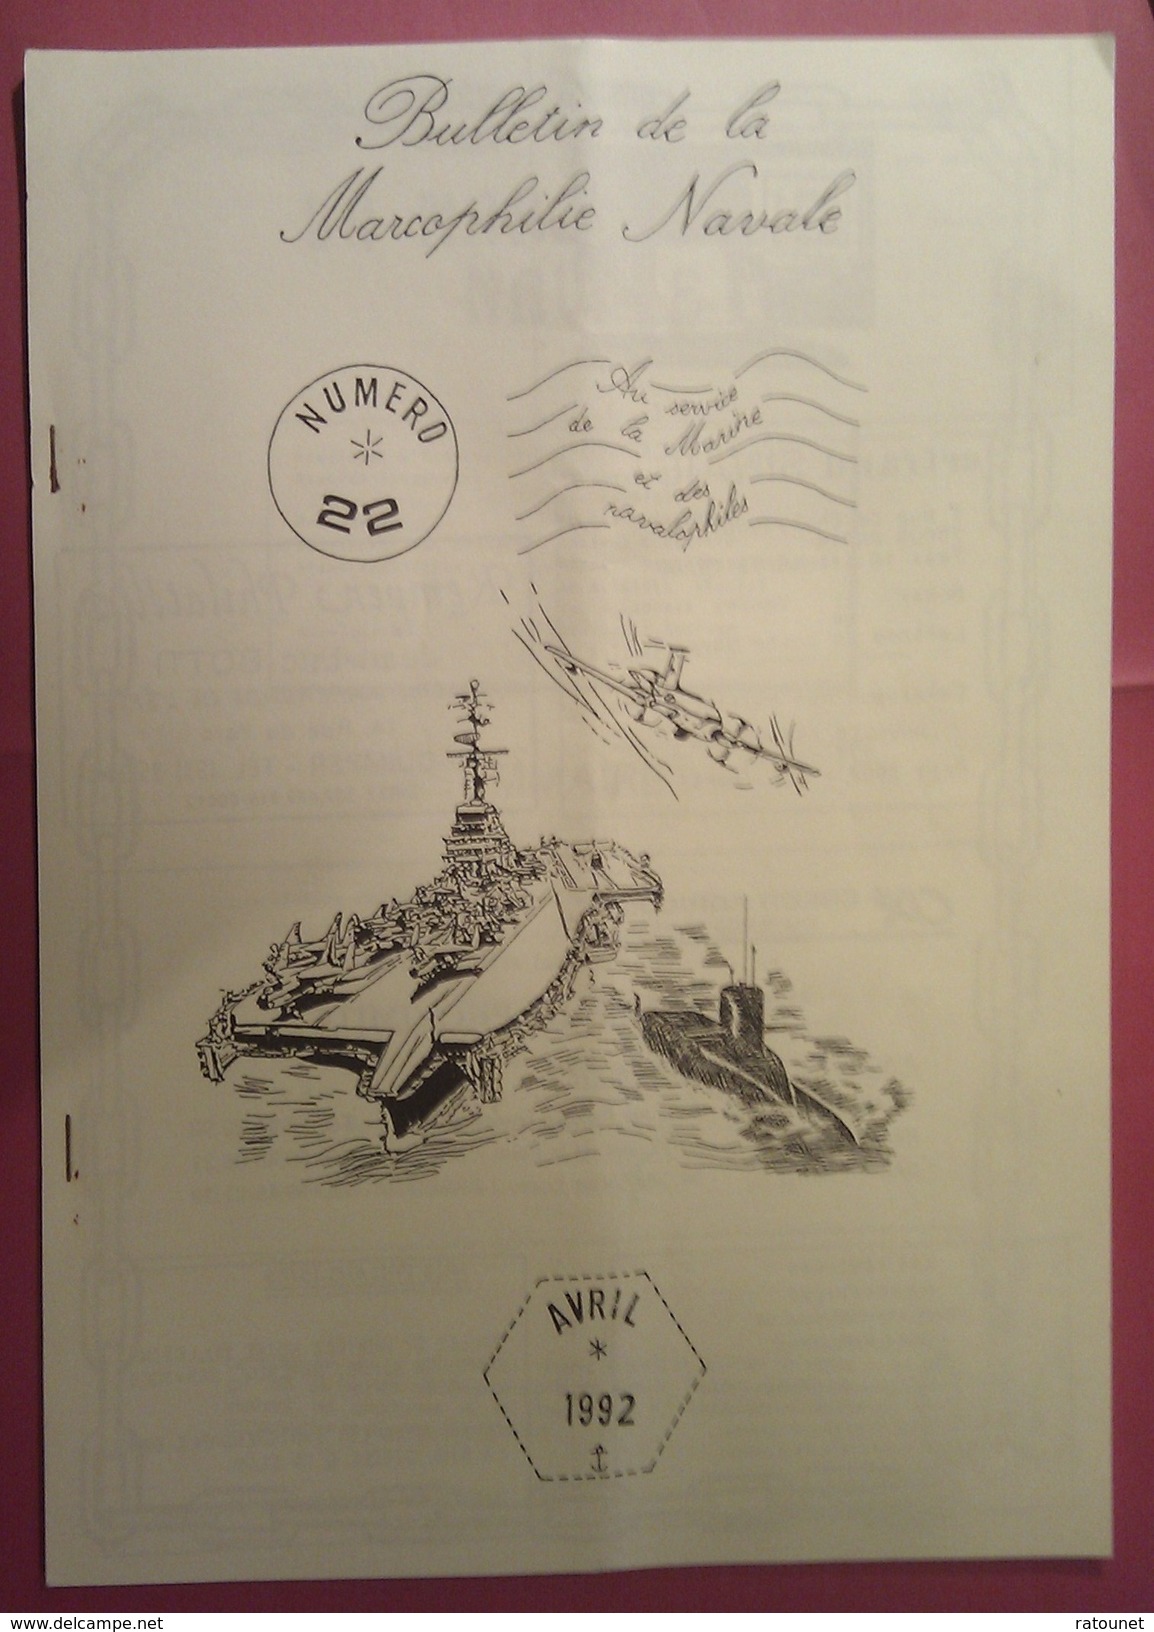 Bulletin De La Marcophilie Navale N° 22 De Avril 1992 - Français (àpd. 1941)